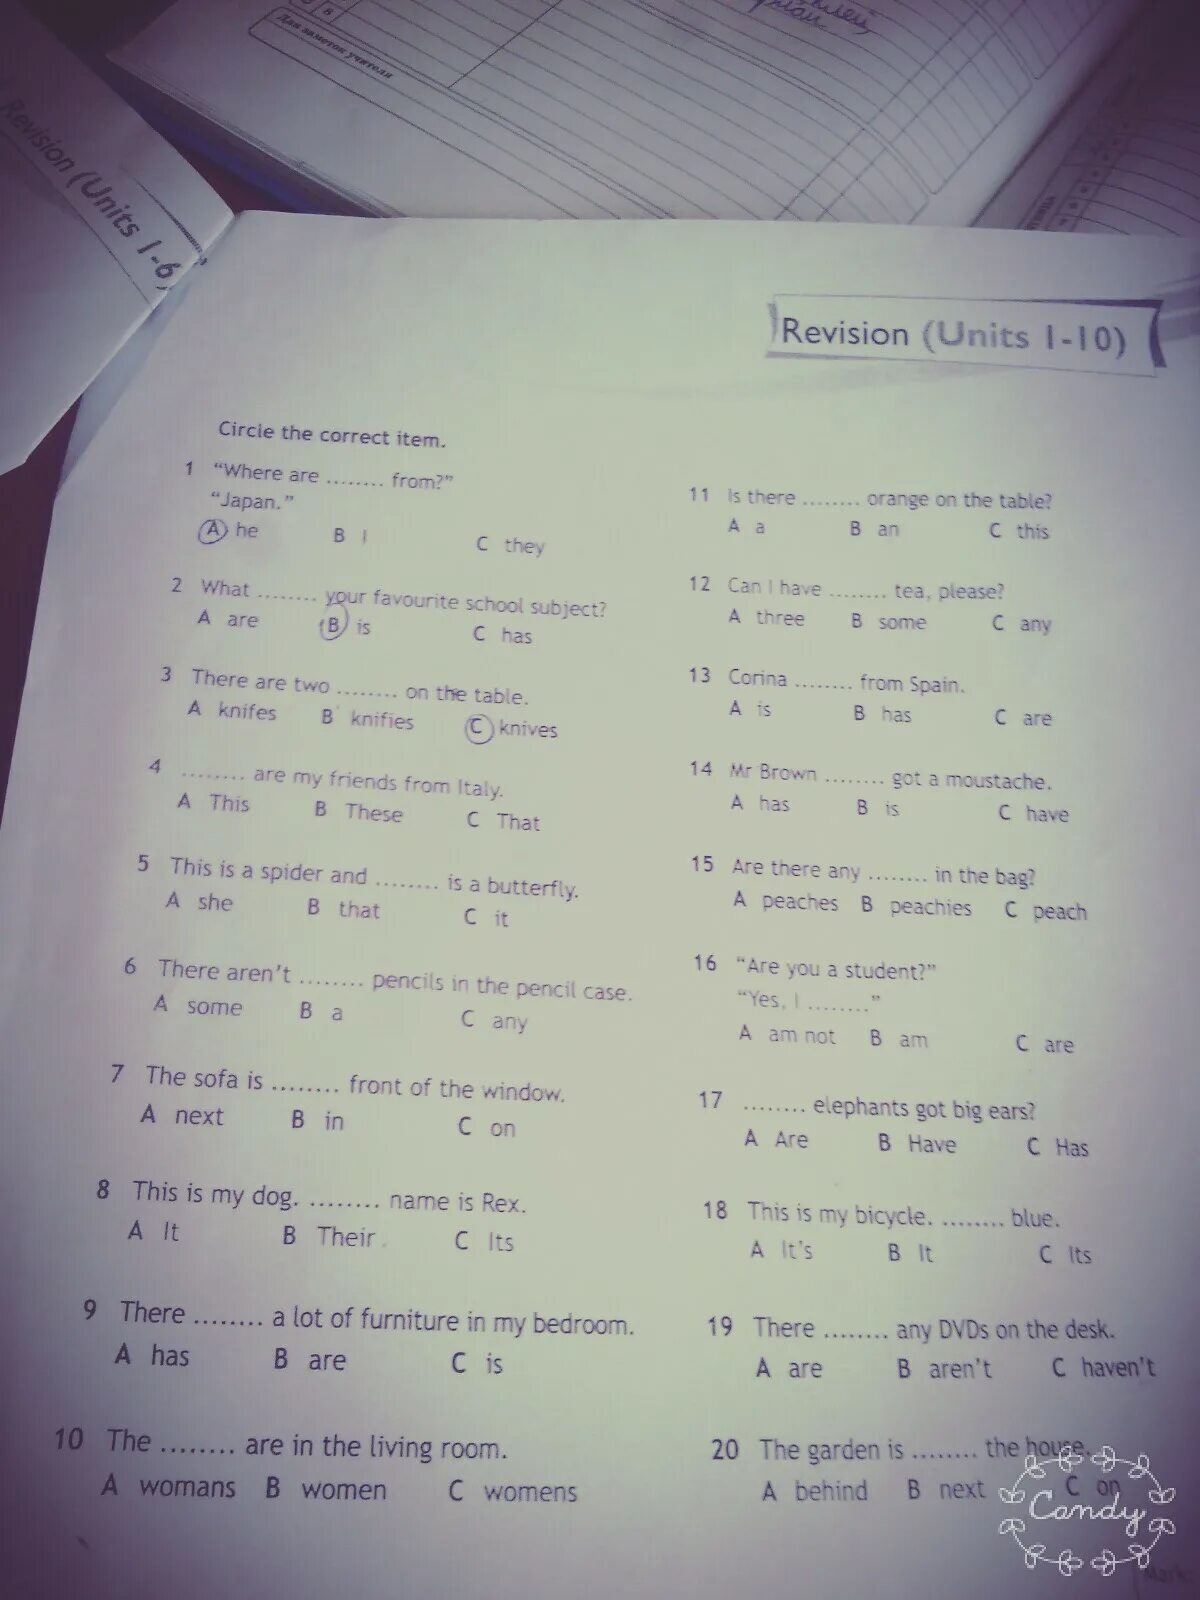 Revision unit 1. Revision 1-3 Units ответы. Revision Units 1-2 ответы. Revision 2 Units 1-10 ответы. Revision 1 Units 1-4 ответы.